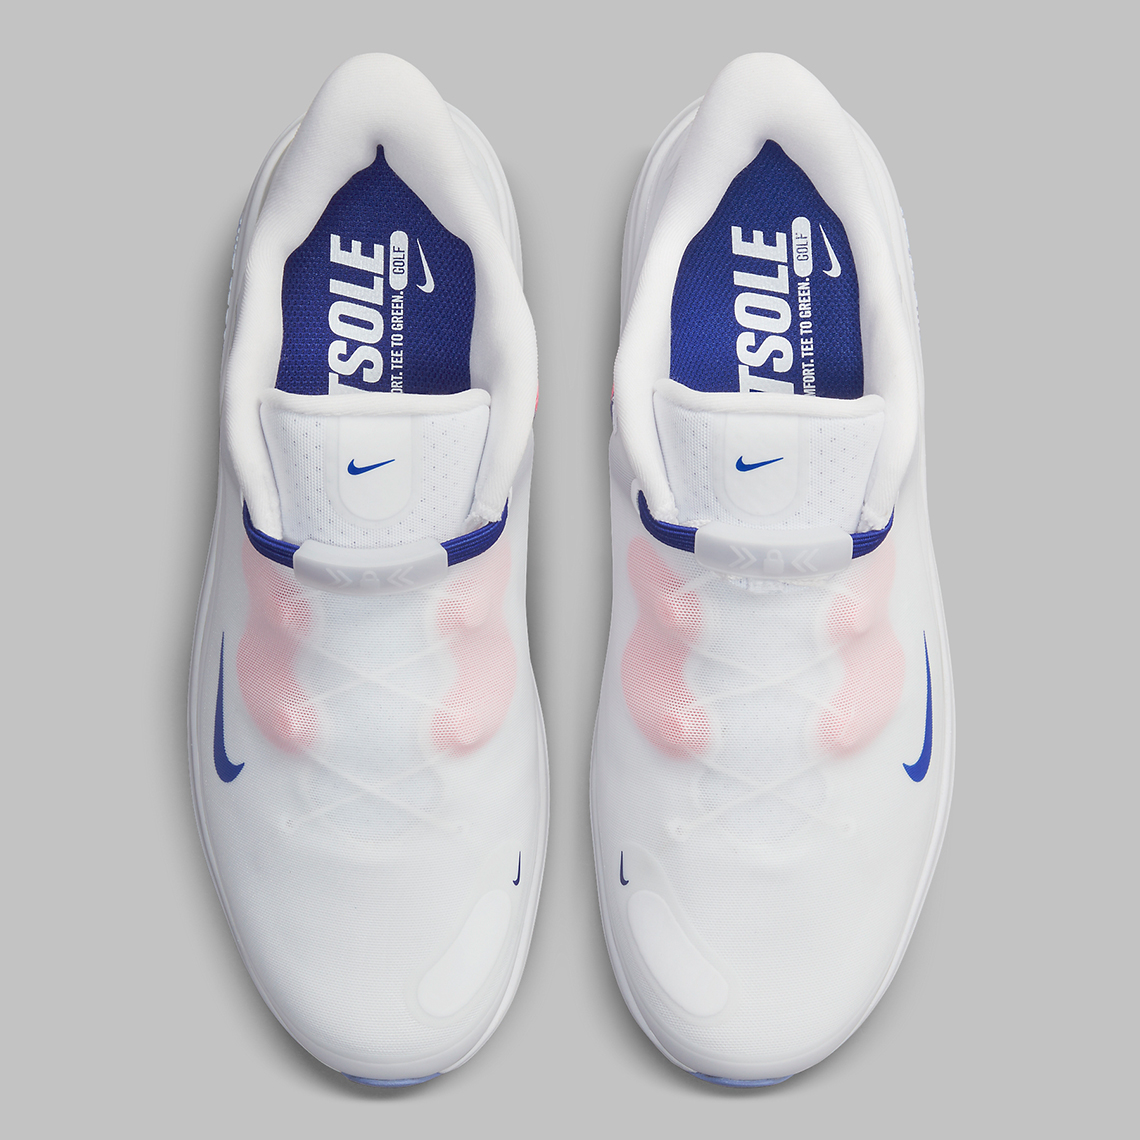 Nike React Ace Golf Shoe Flyease Cw3096 100 1